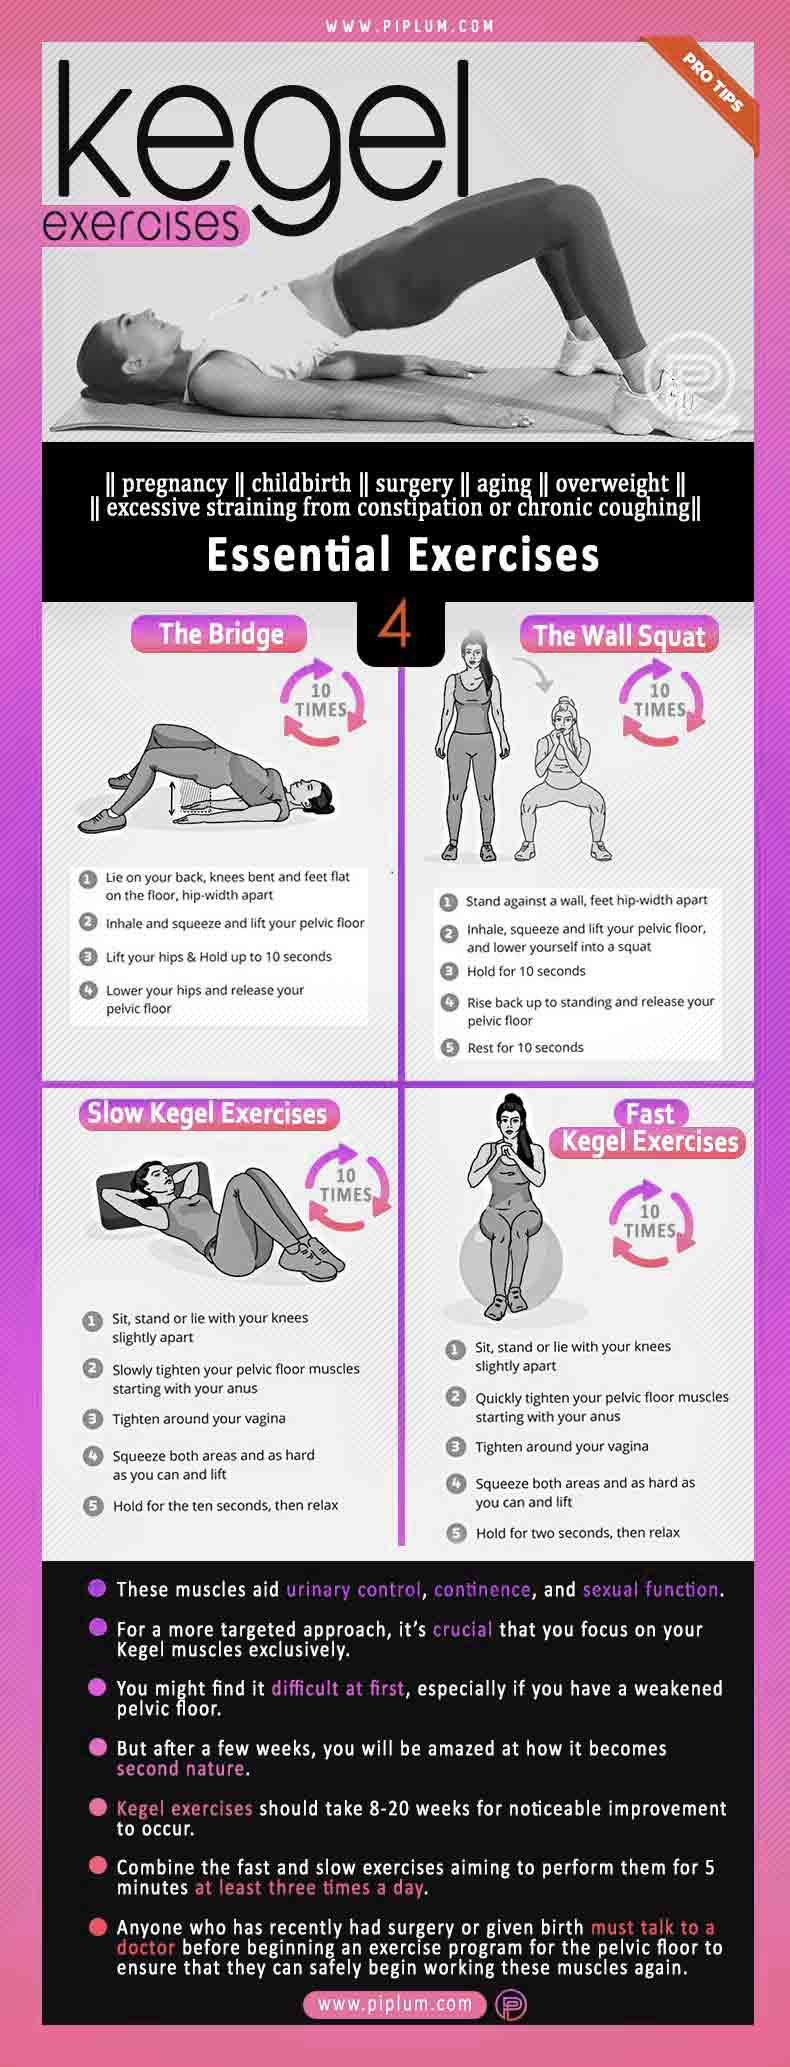 Kegel-Exercises-For-Women-During-Pregnancy-Pelvic-Floor-Problems-Solved